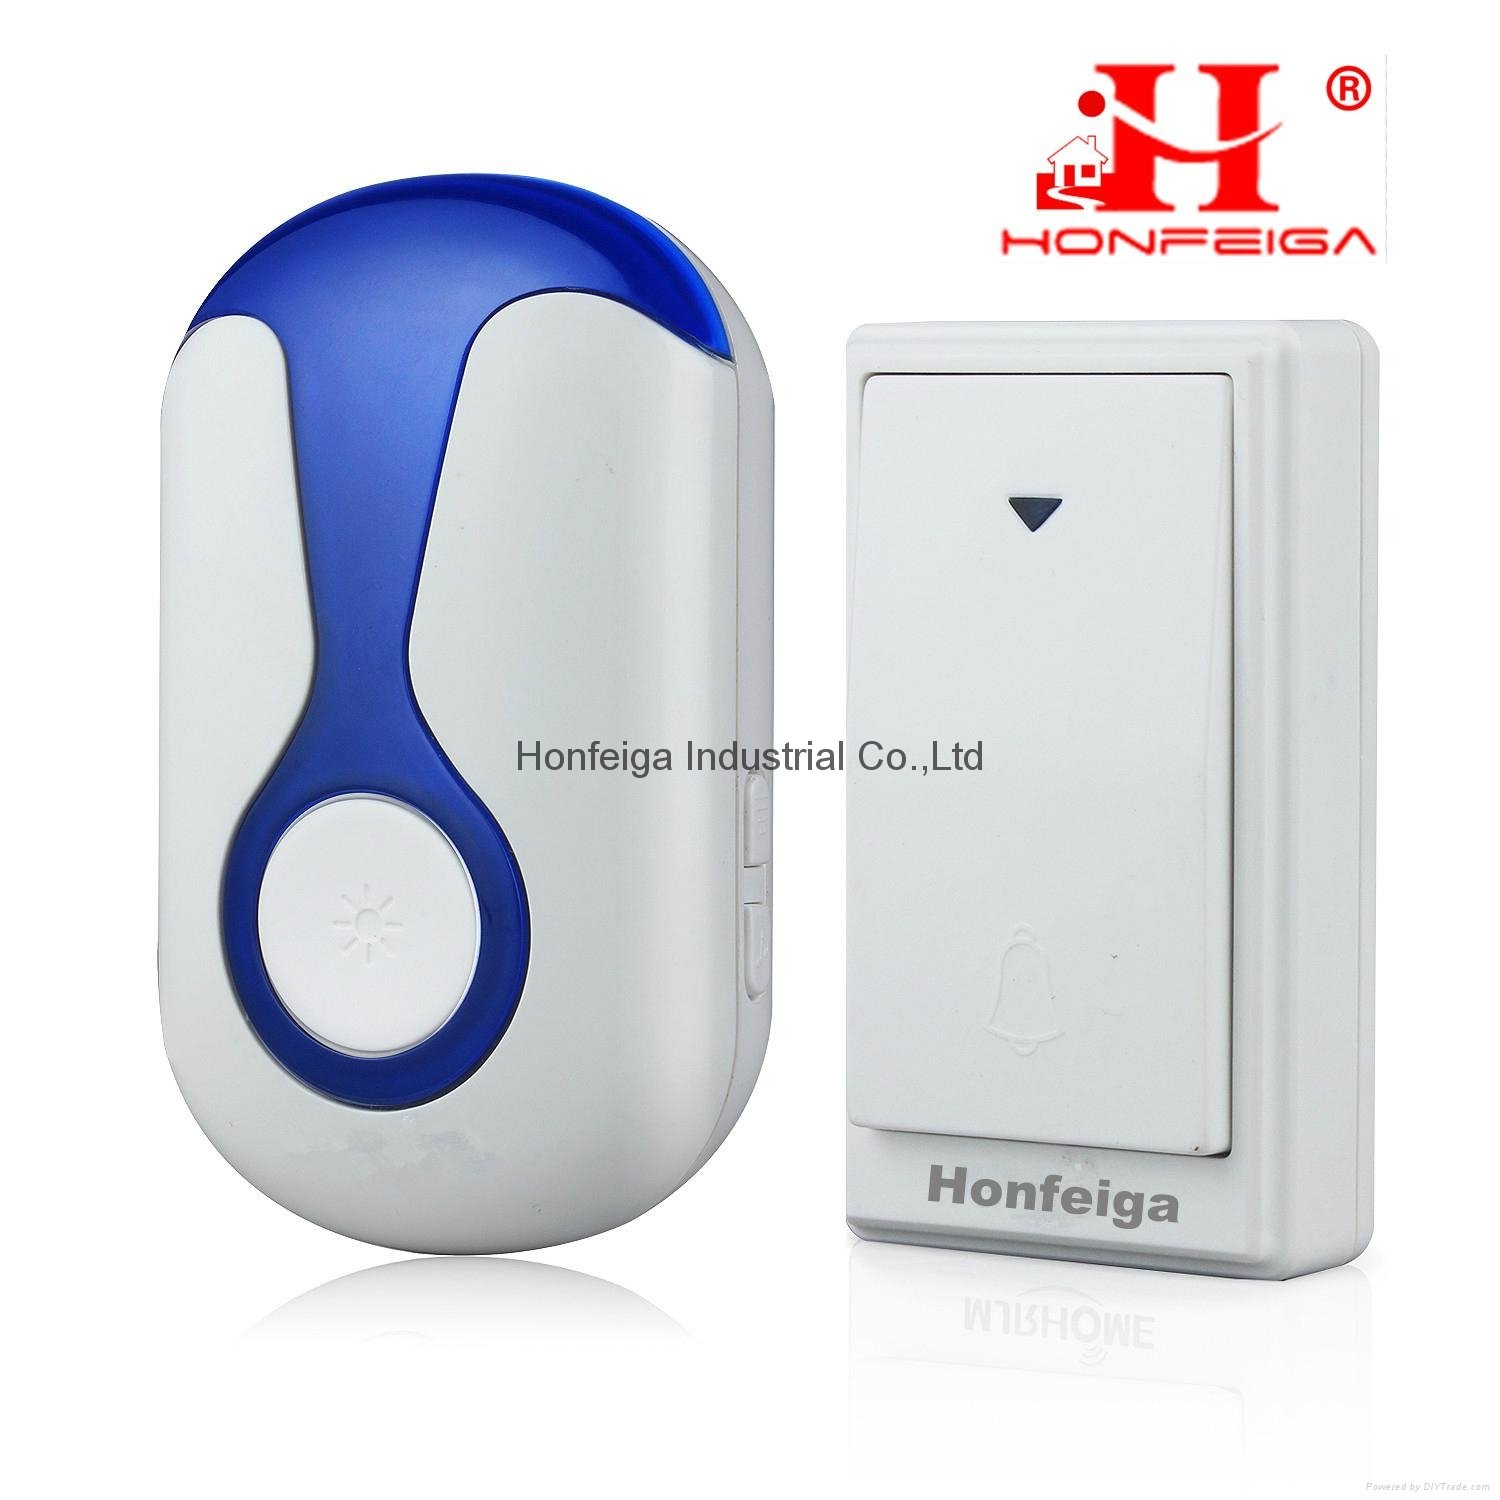 Honfeiga Eco Wireless Door bells